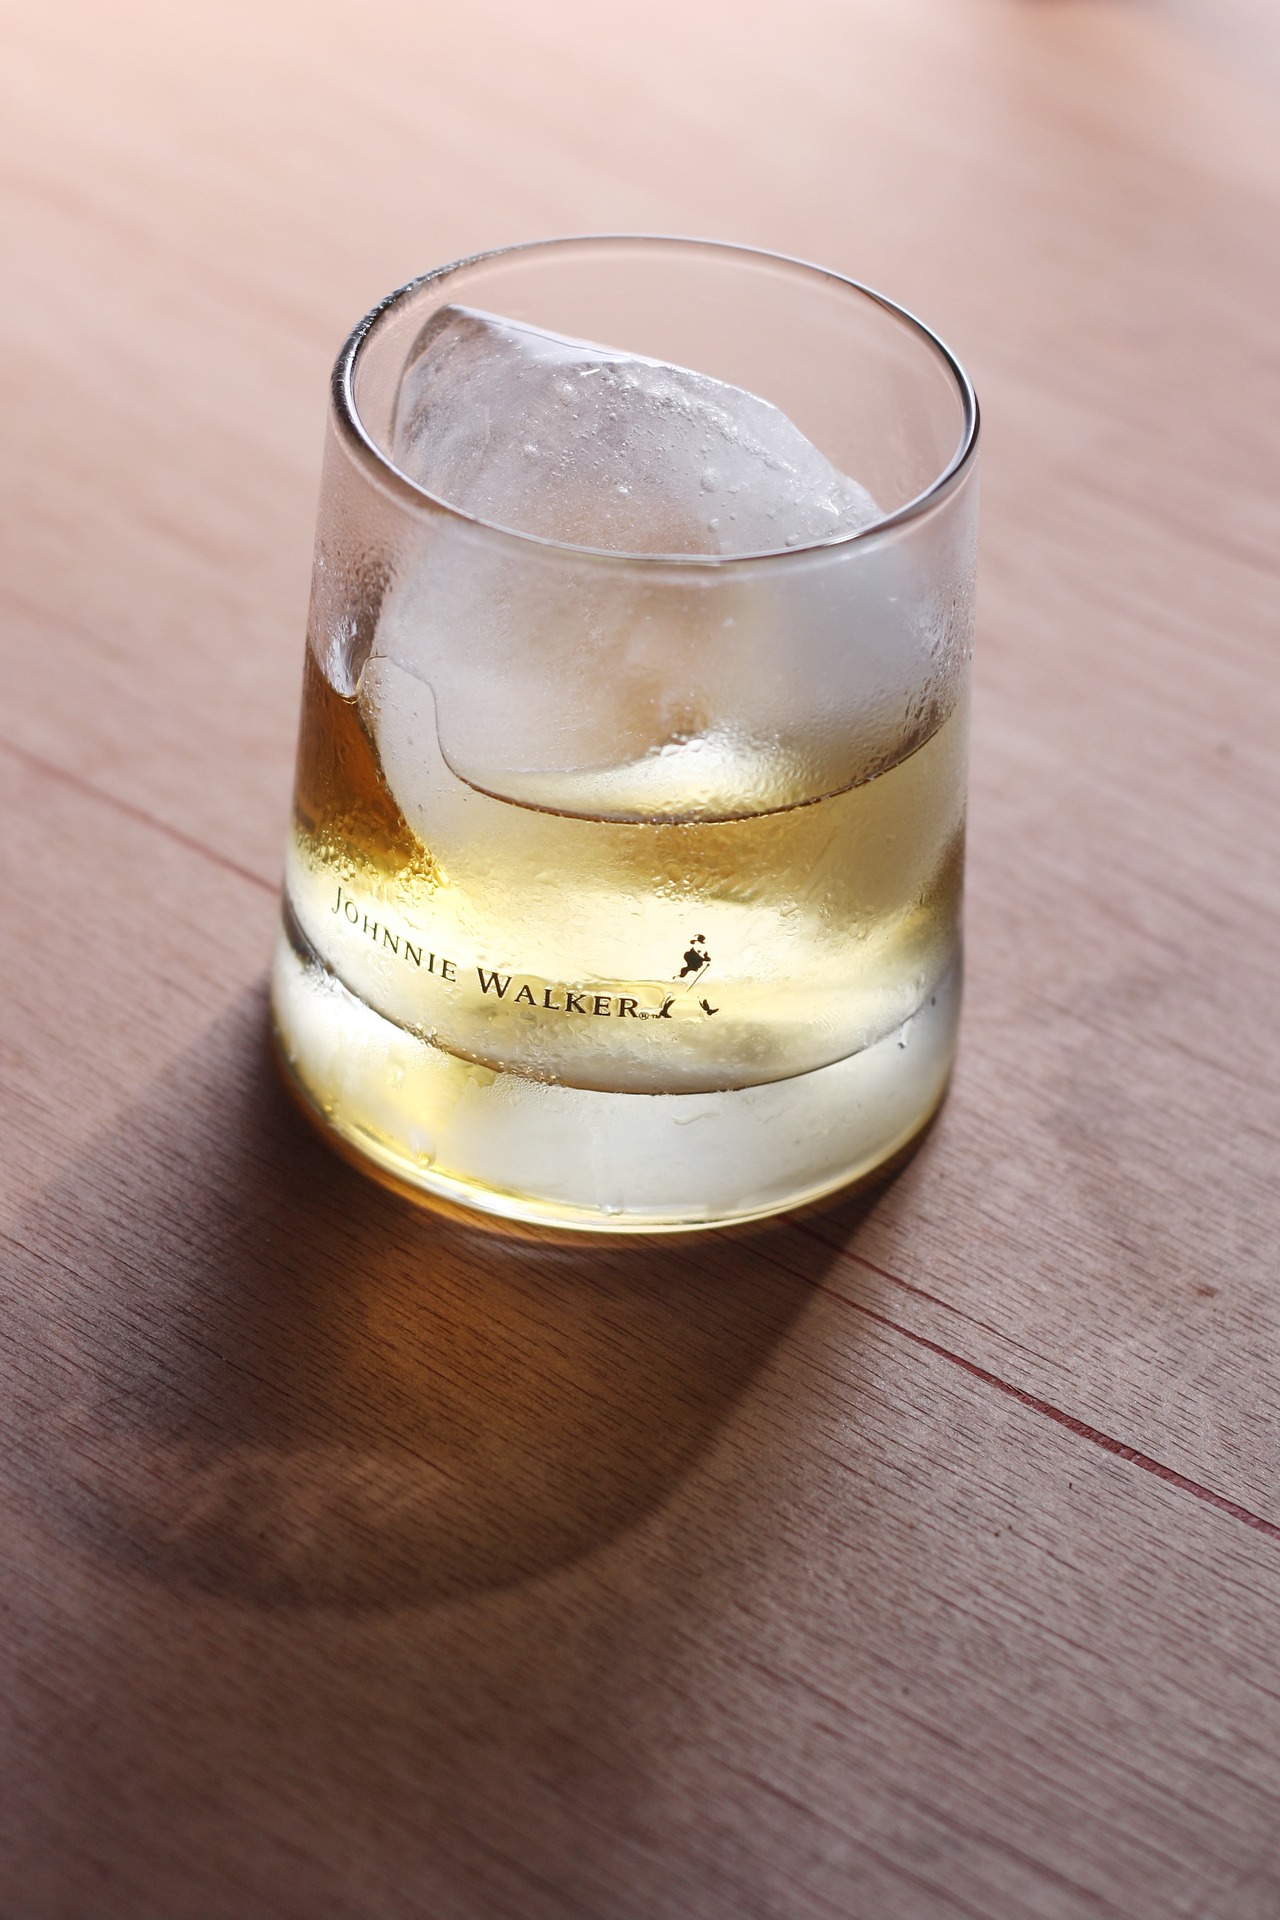 Whisky Johnnie Walker Black Label 12 Year Old Speyside Origin (1L) Whisky Scottish Blended